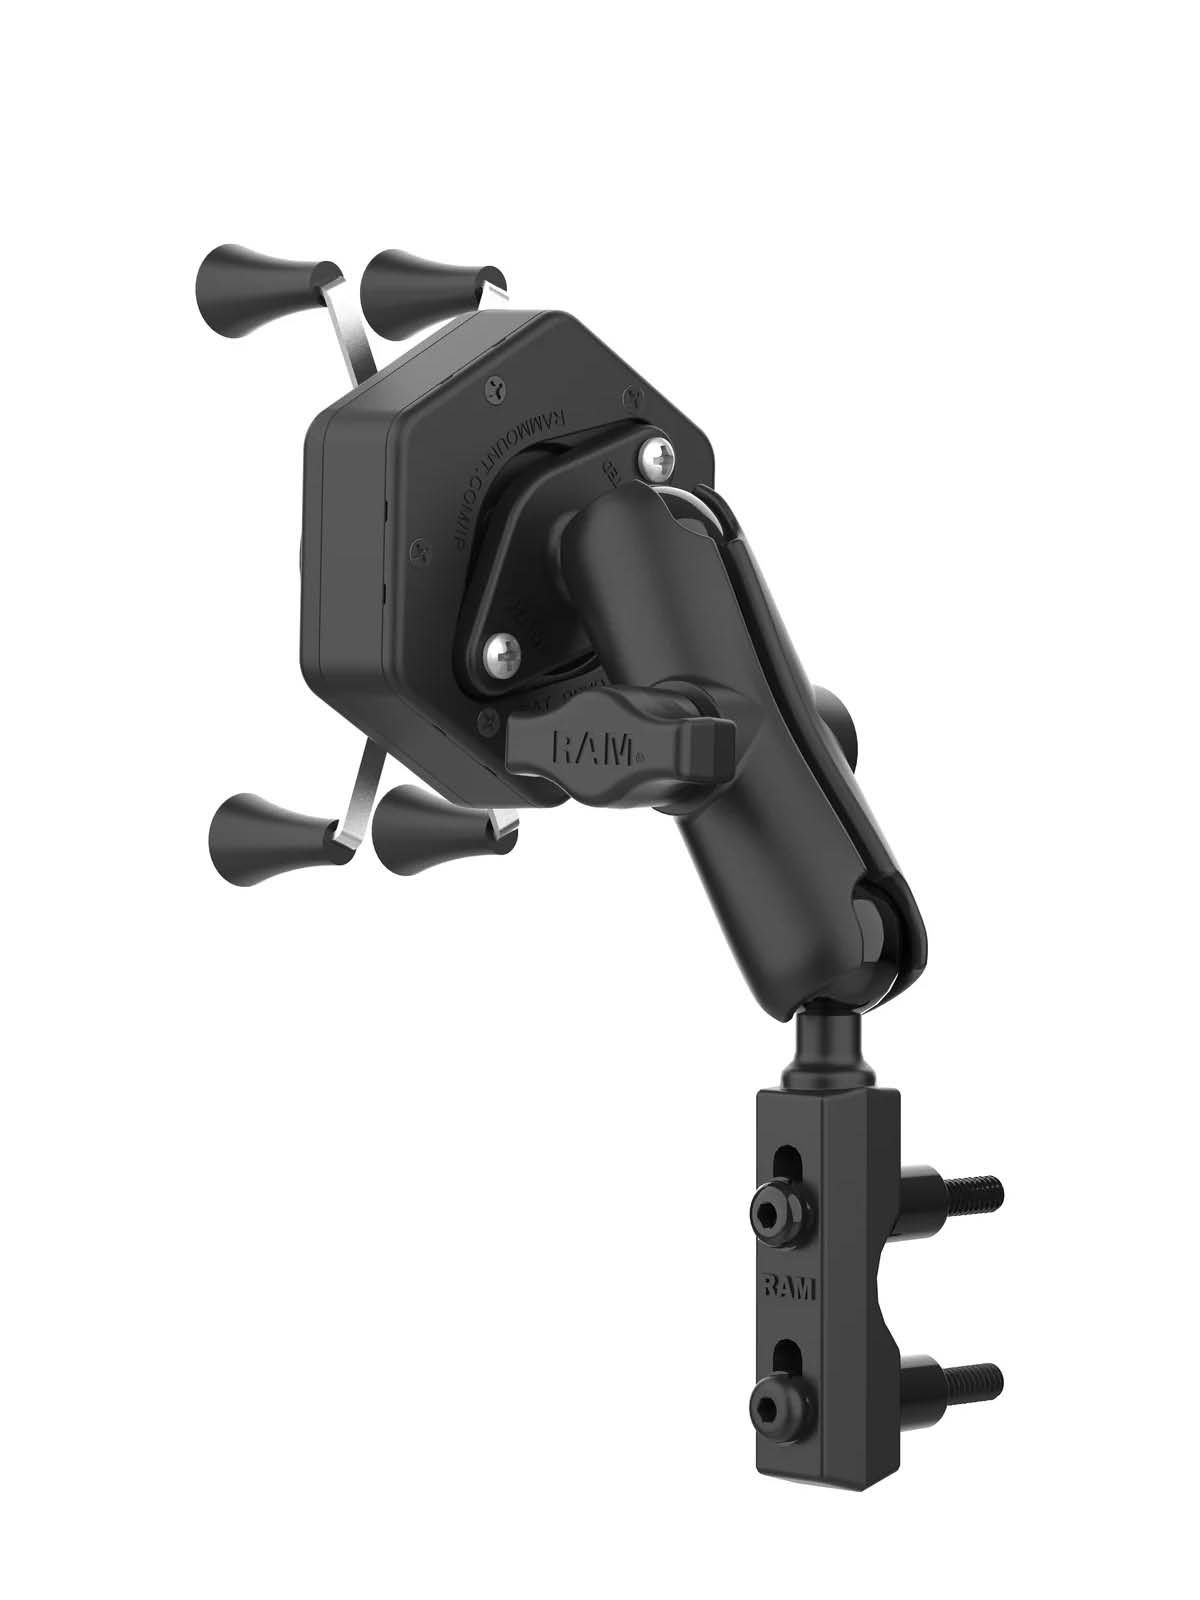 RAM Mounts X-Grip Motorrad-Halterung für Smartphones bis 82,6 mm Breite mit Vibe-Safe Adapter - B-Kugel (1 Zoll), mittlerer Verbindungsarm